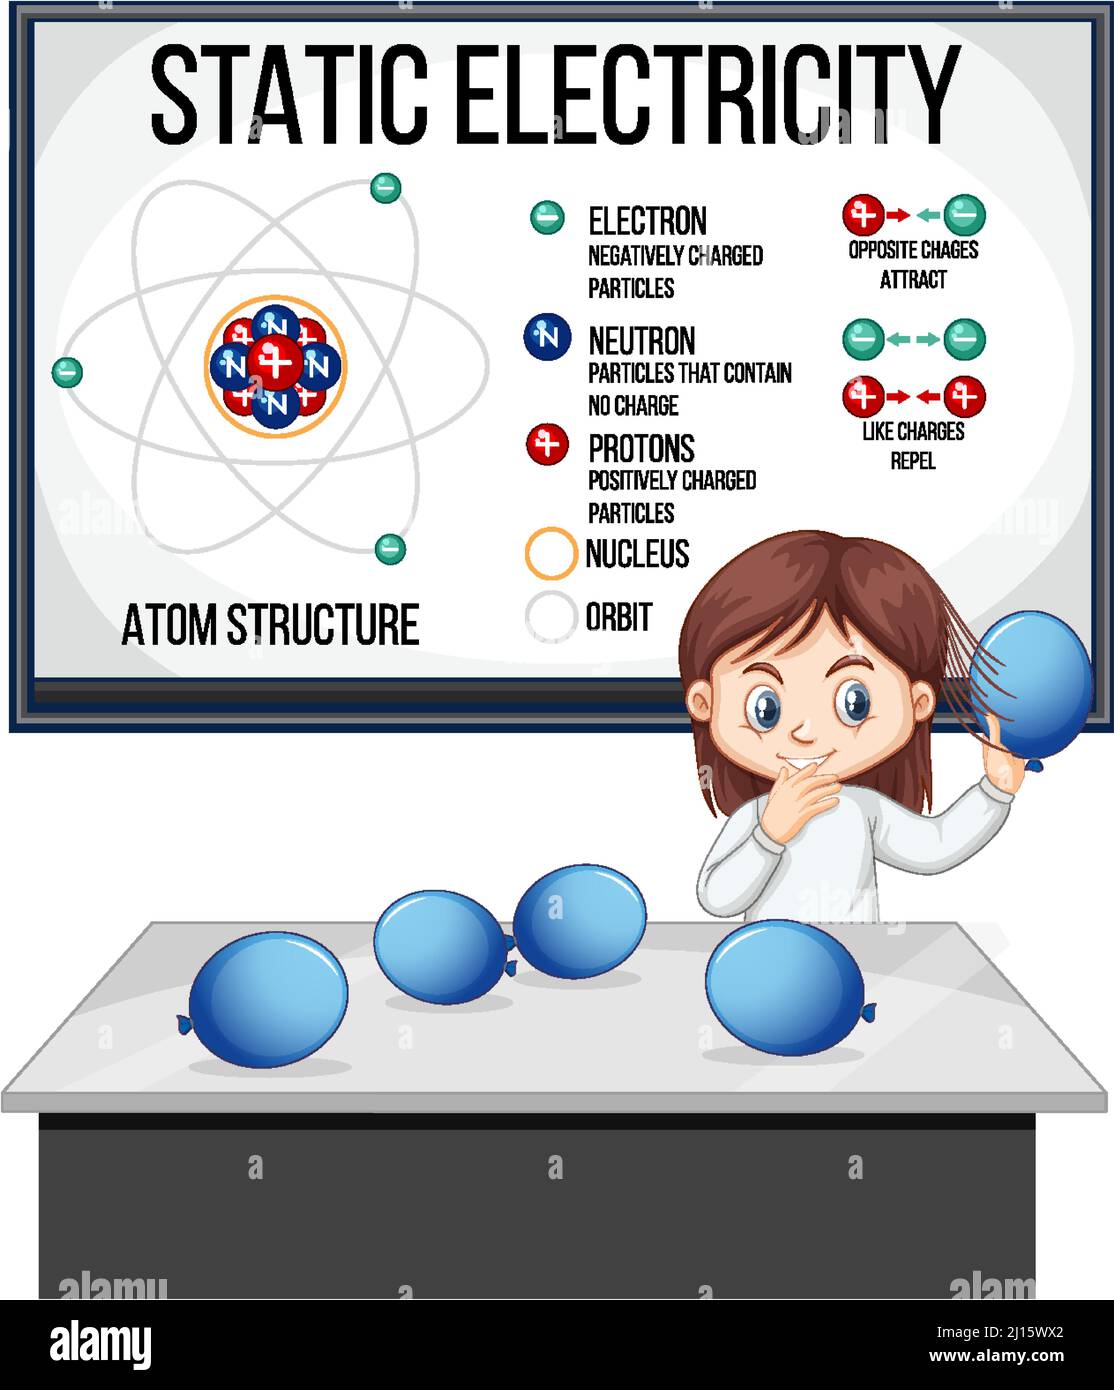 Wissenschaftler Mädchen erklärt Atom-Struktur der statischen Elektrizität Illustration Stock Vektor